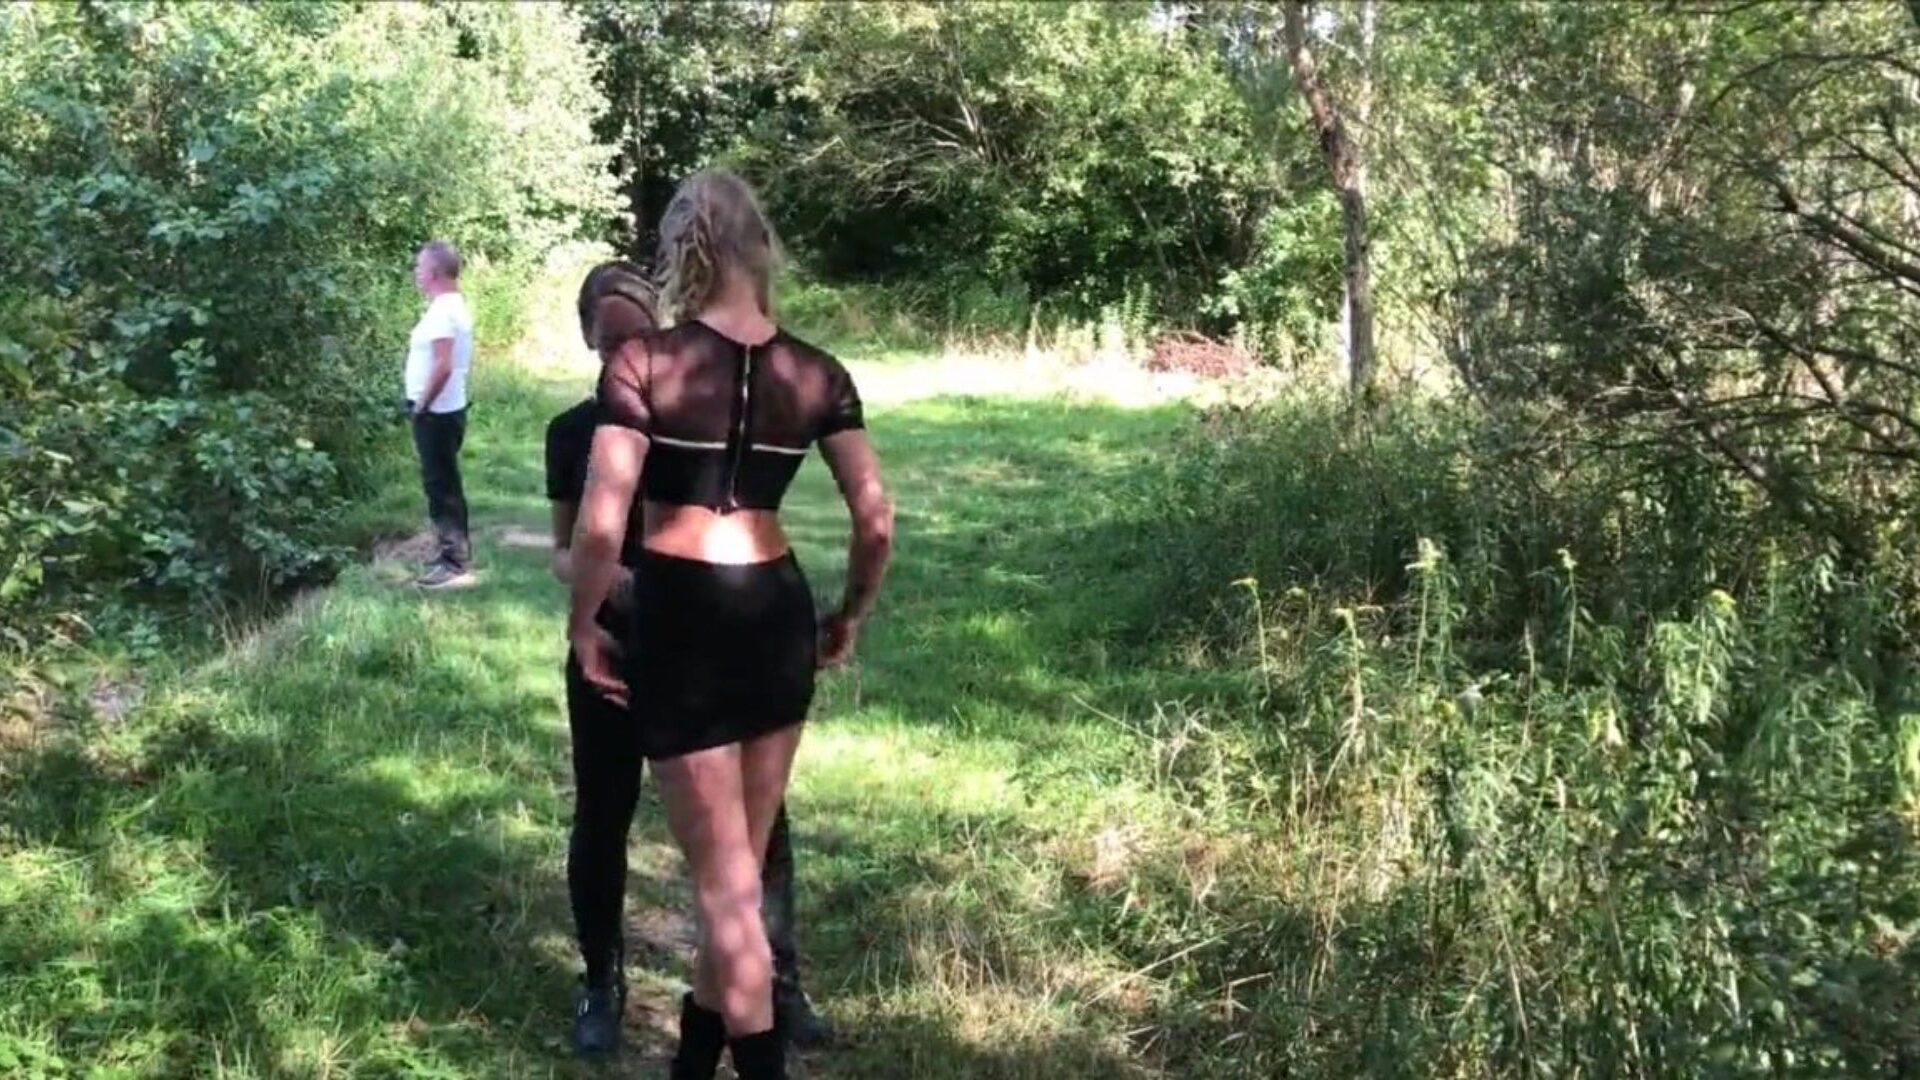 δημόσιες λεσβίες: ελεύθερο σεξ στο δάσος hd πορνό βίντεο 33 παρακολουθήστε δημόσια λεσβιακή ταινία σεξ σκηνή για δωρεάν στο xhamster, με τη μεγαλύτερη συλλογή ολλανδικού σεξ στο δάσος & επεισόδια επεισοδίων ξανθής πορνογραφίας hd